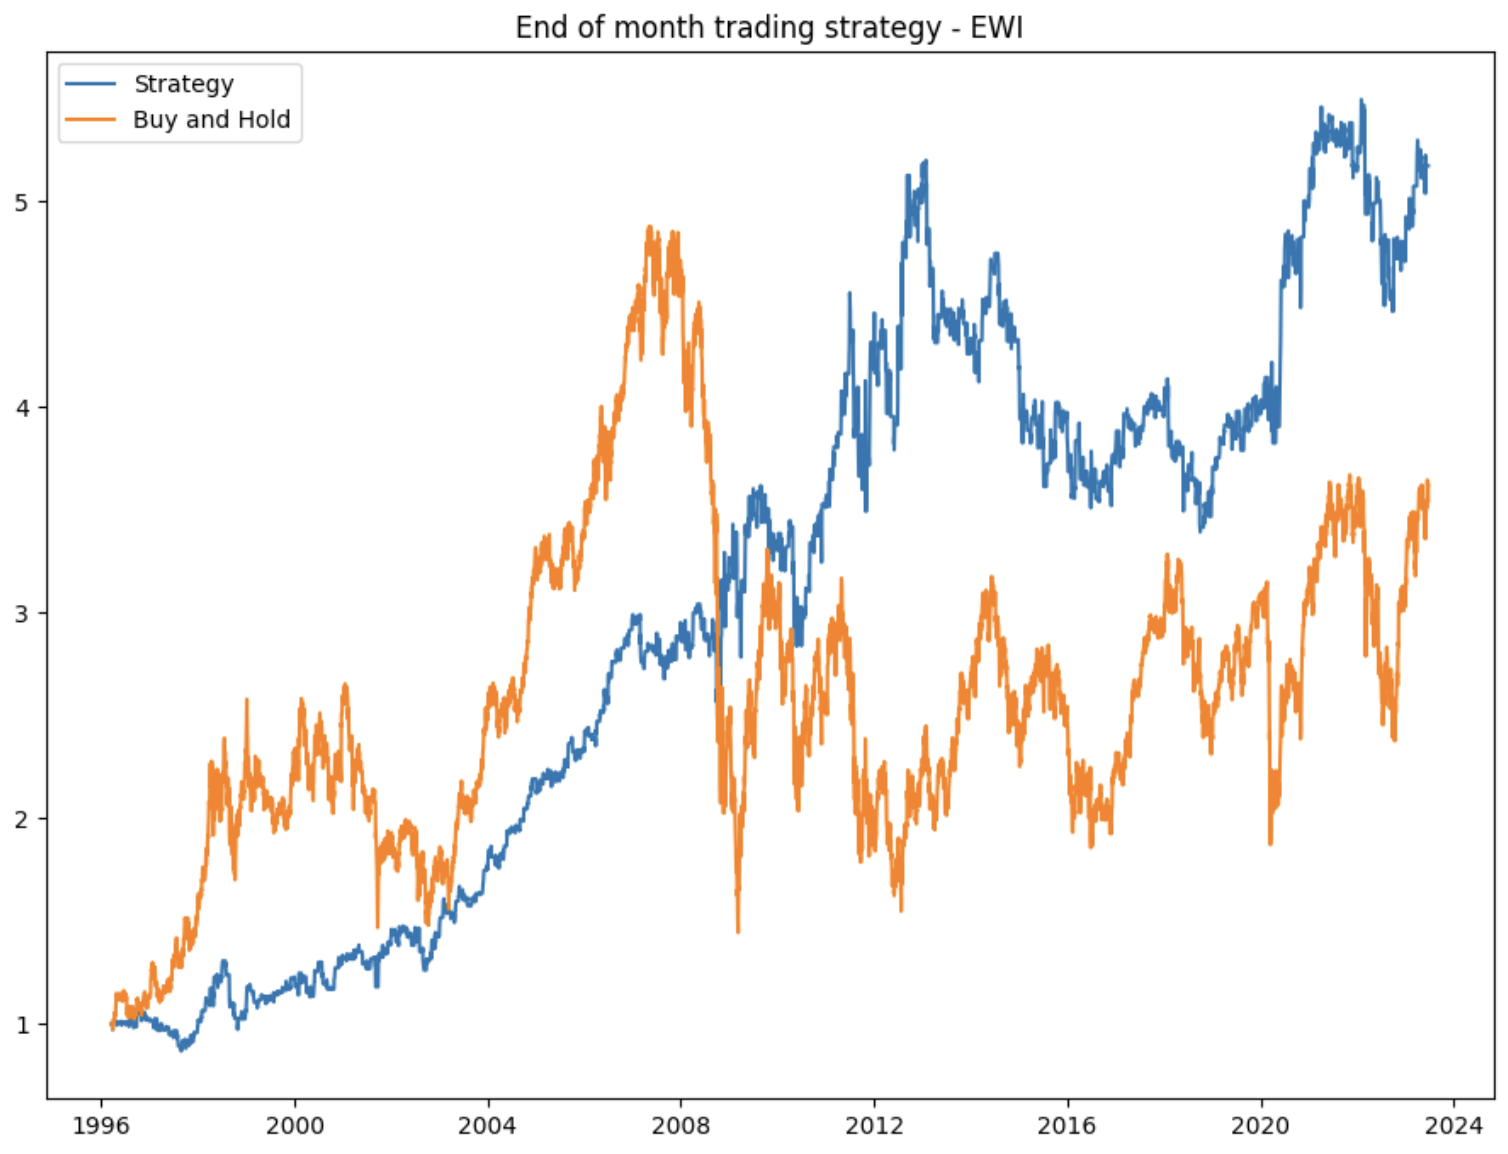 Italian stock market trading strategy